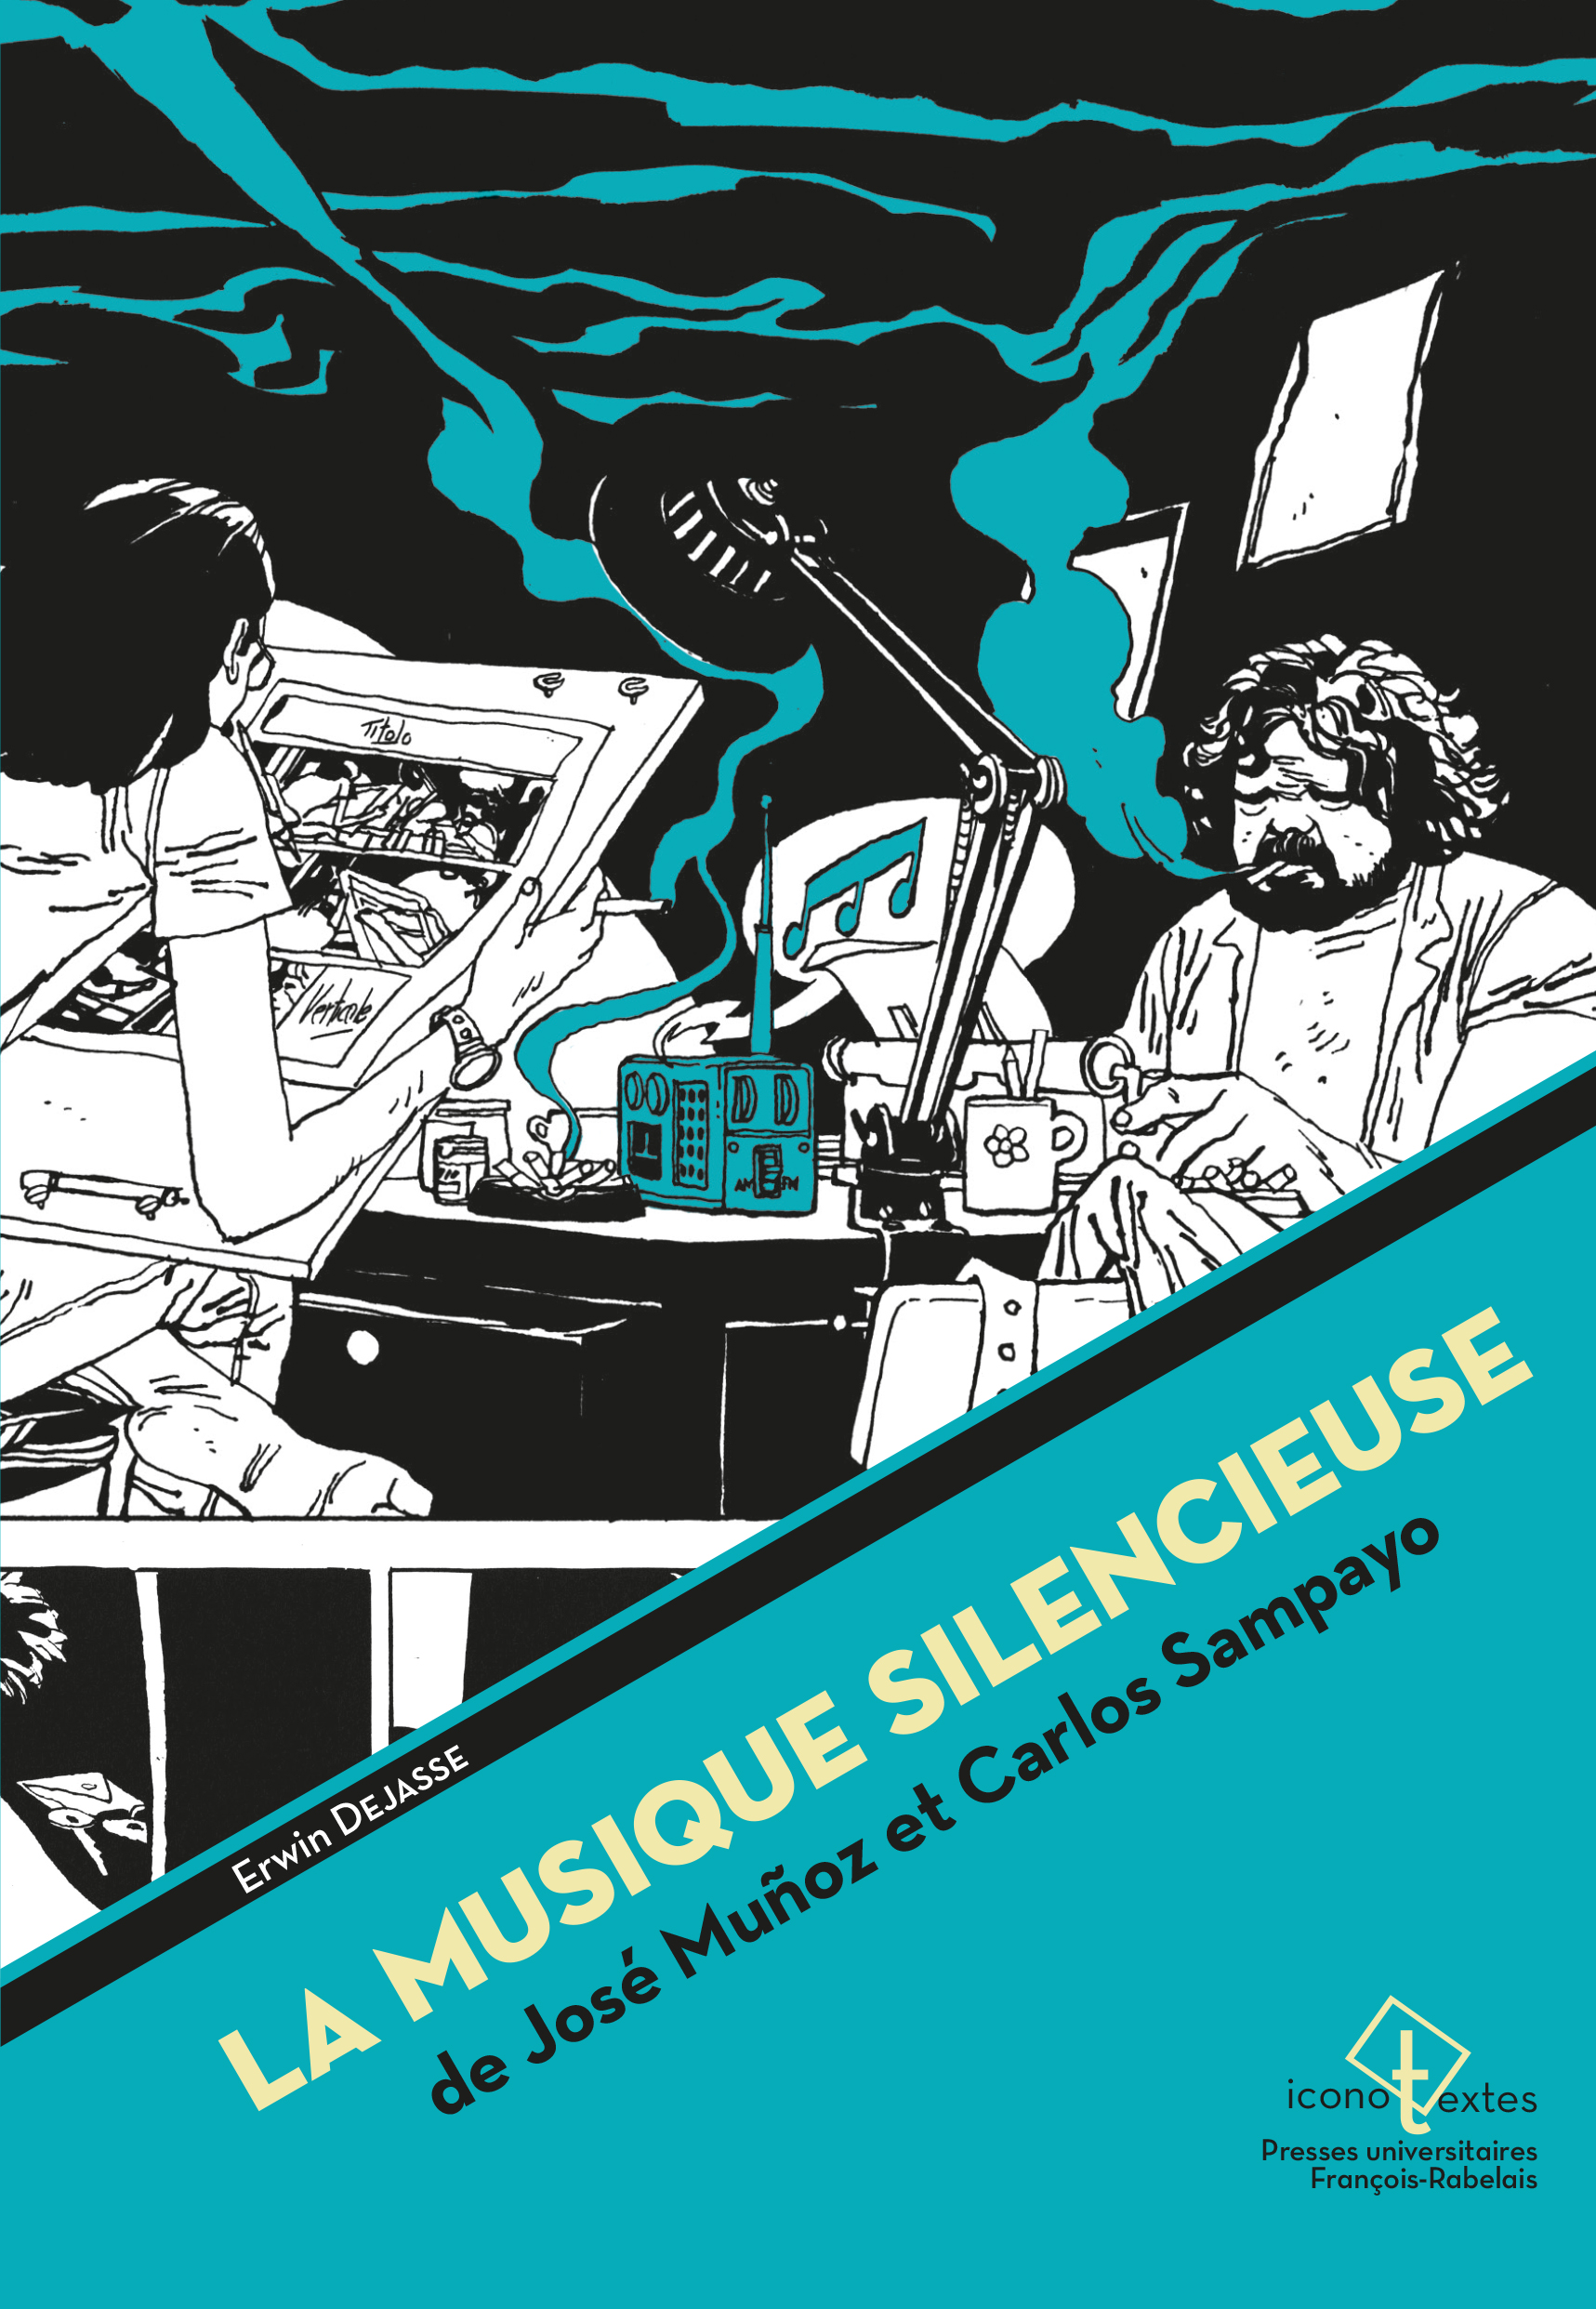 La Musique silencieuse de José Muñoz et Carlos Sampayo